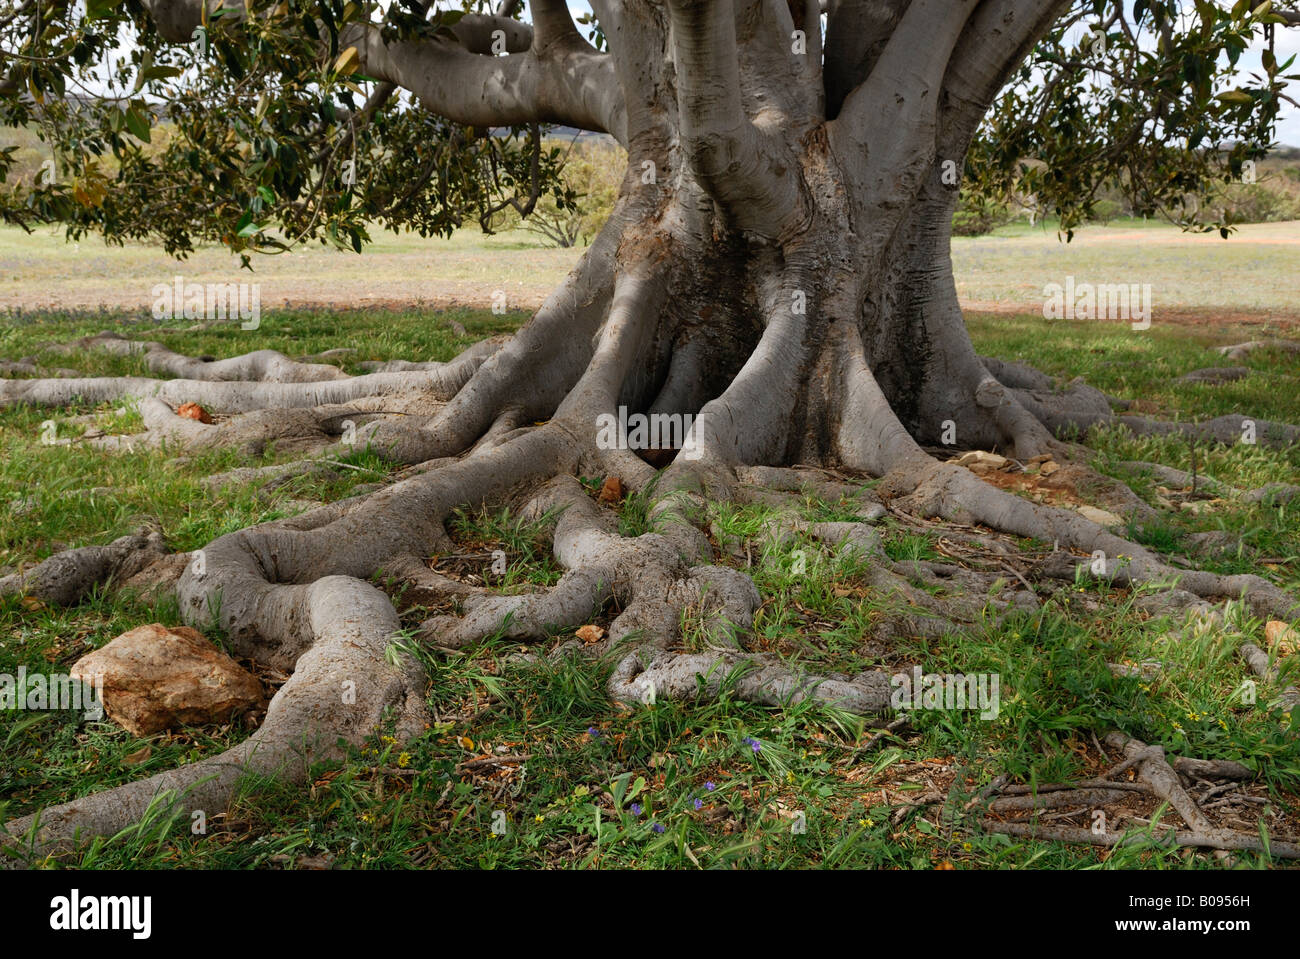 Tronco y raíces de la bahía Moreton higuera (Ficus macrophylla), Australia Occidental, Australia Foto de stock